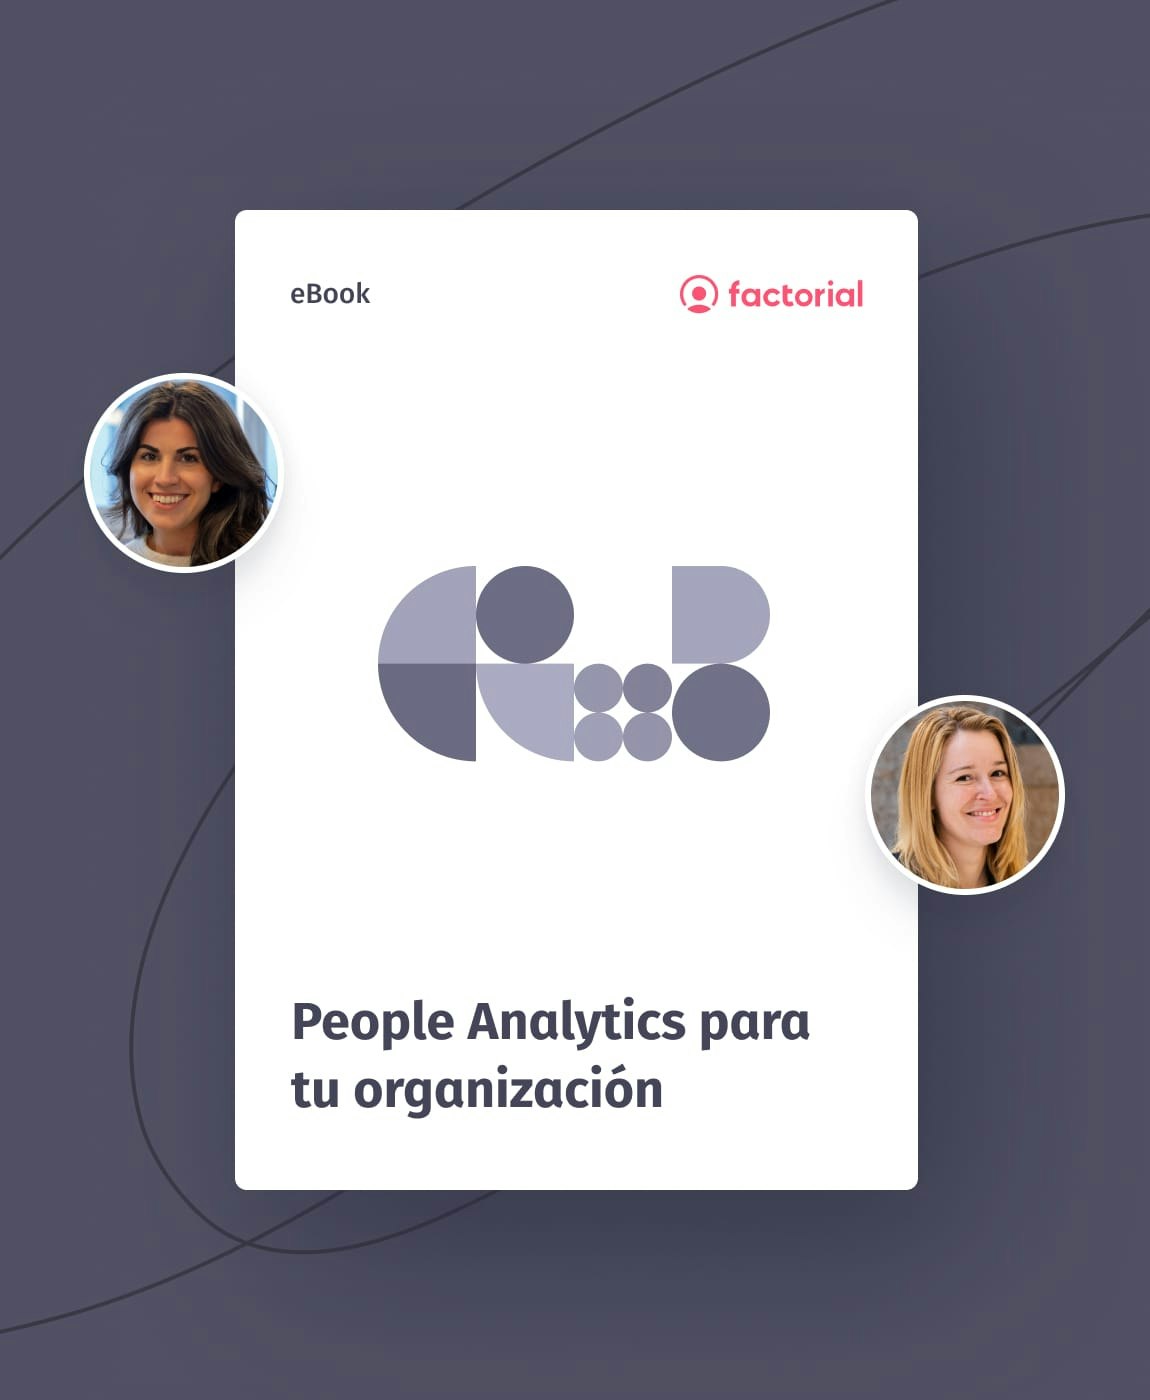 People Analytics para tu organización